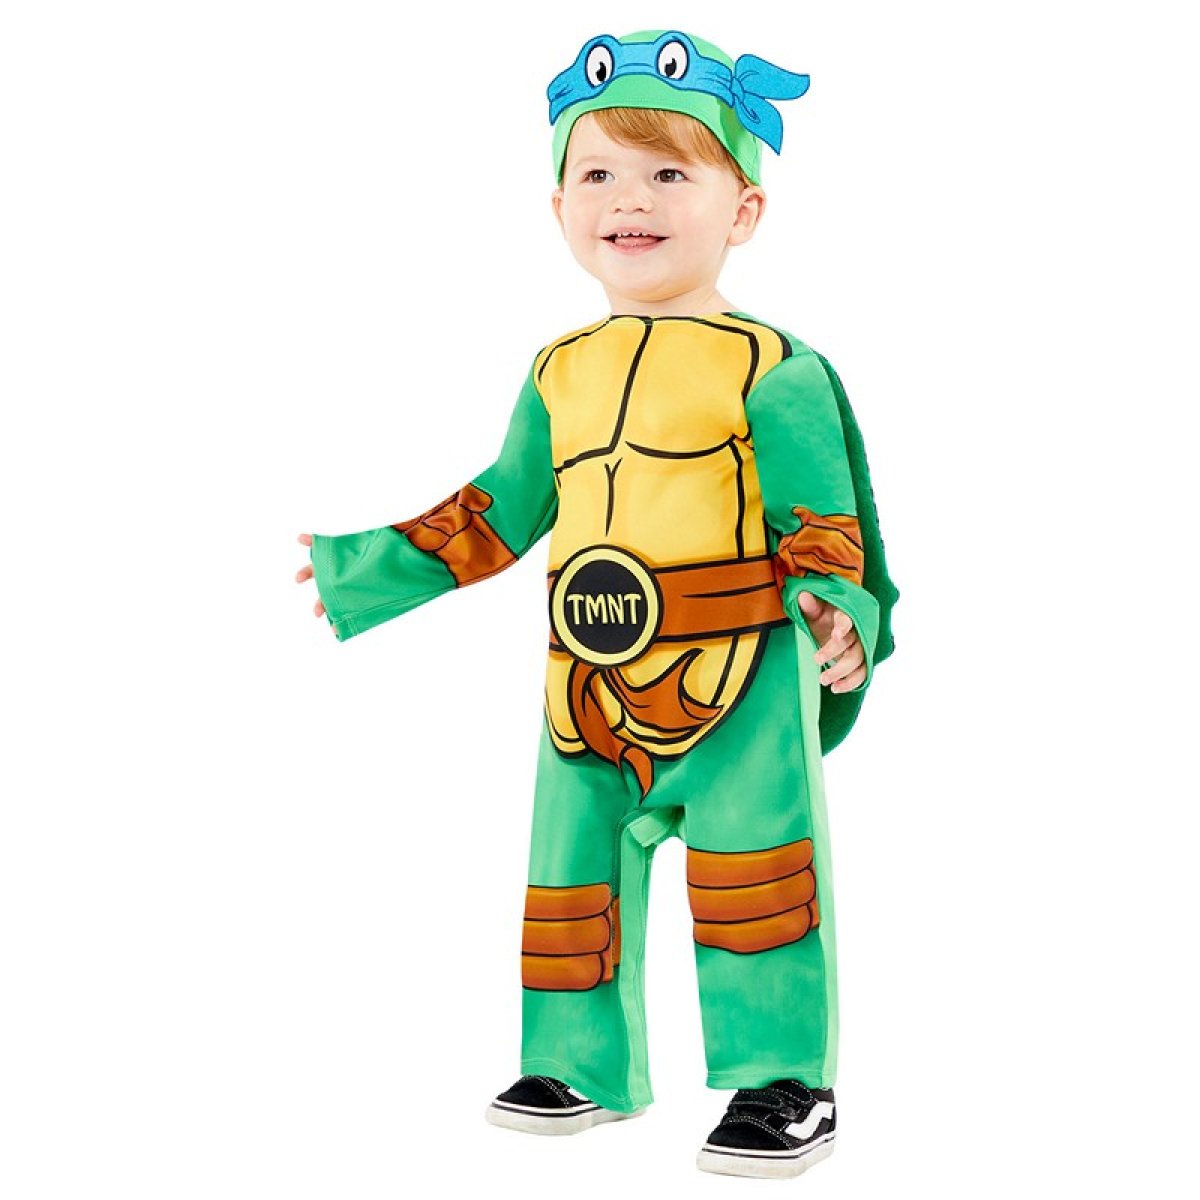 Bliv overrasket Konkurrence ar Køb Ninja Turtles® Babykostume til kun 249 kr | Temashop.dk